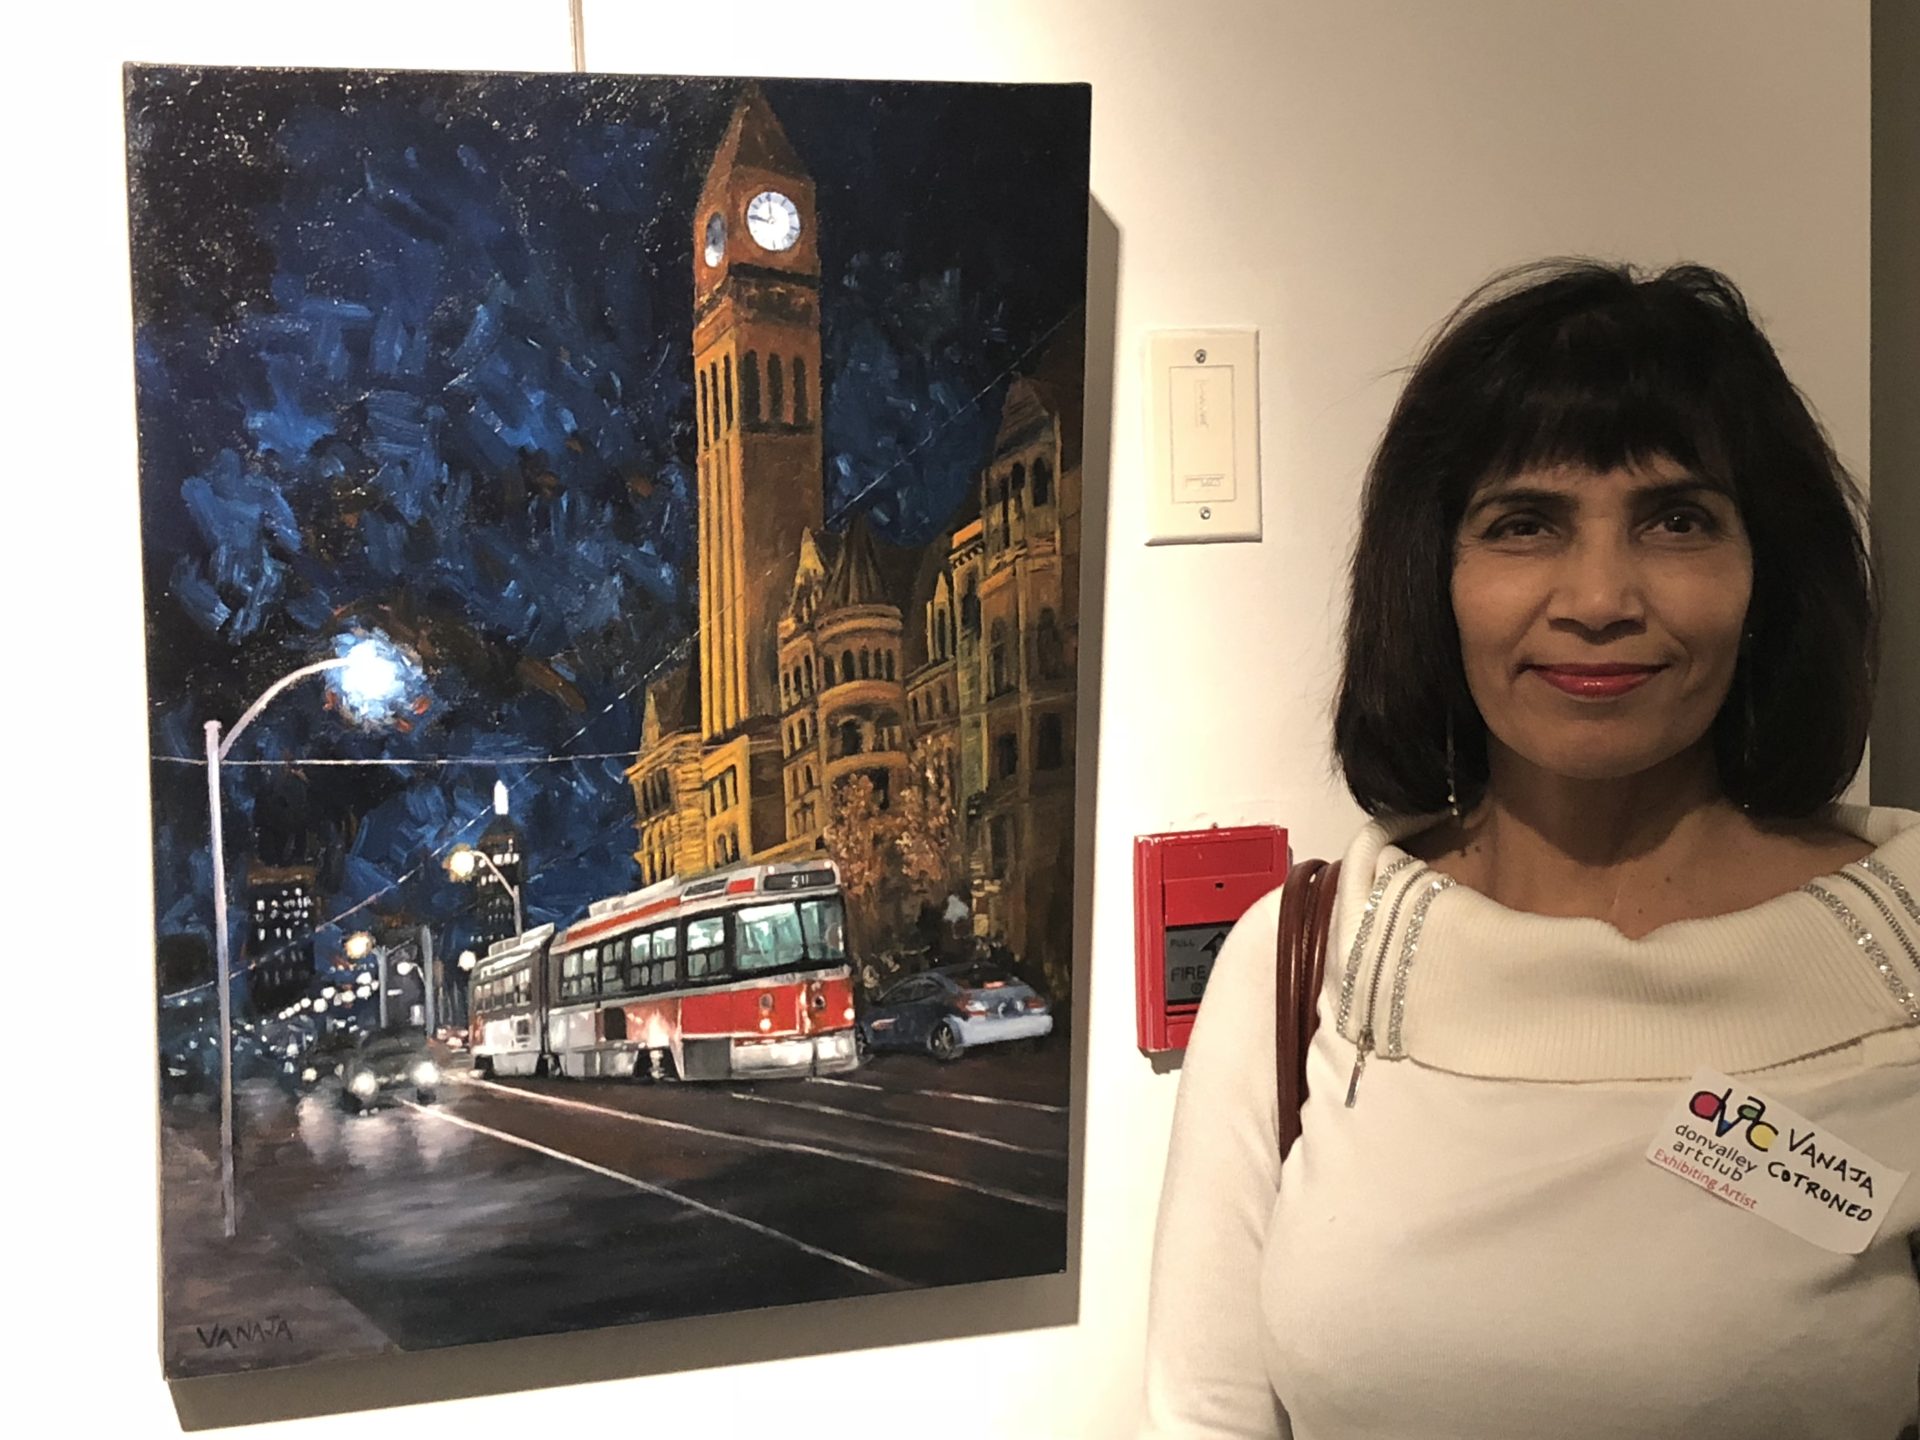 Vanaja Cotroneo with her artwork.